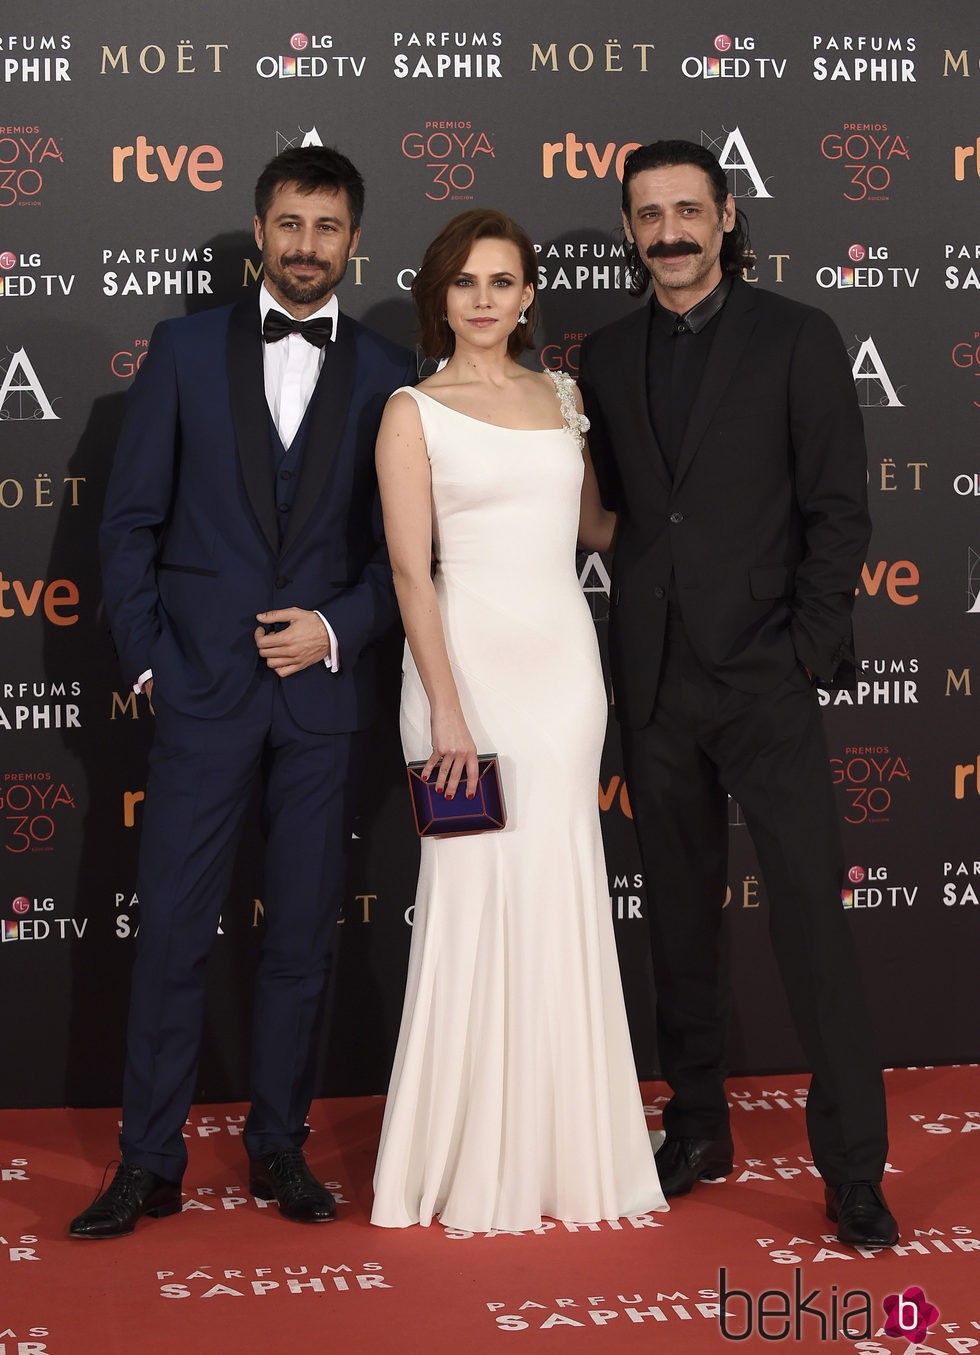 Hugo Silva, Aura Garrido y Nacho Fresnada en la alfombra roja de los Premios Goya 2016